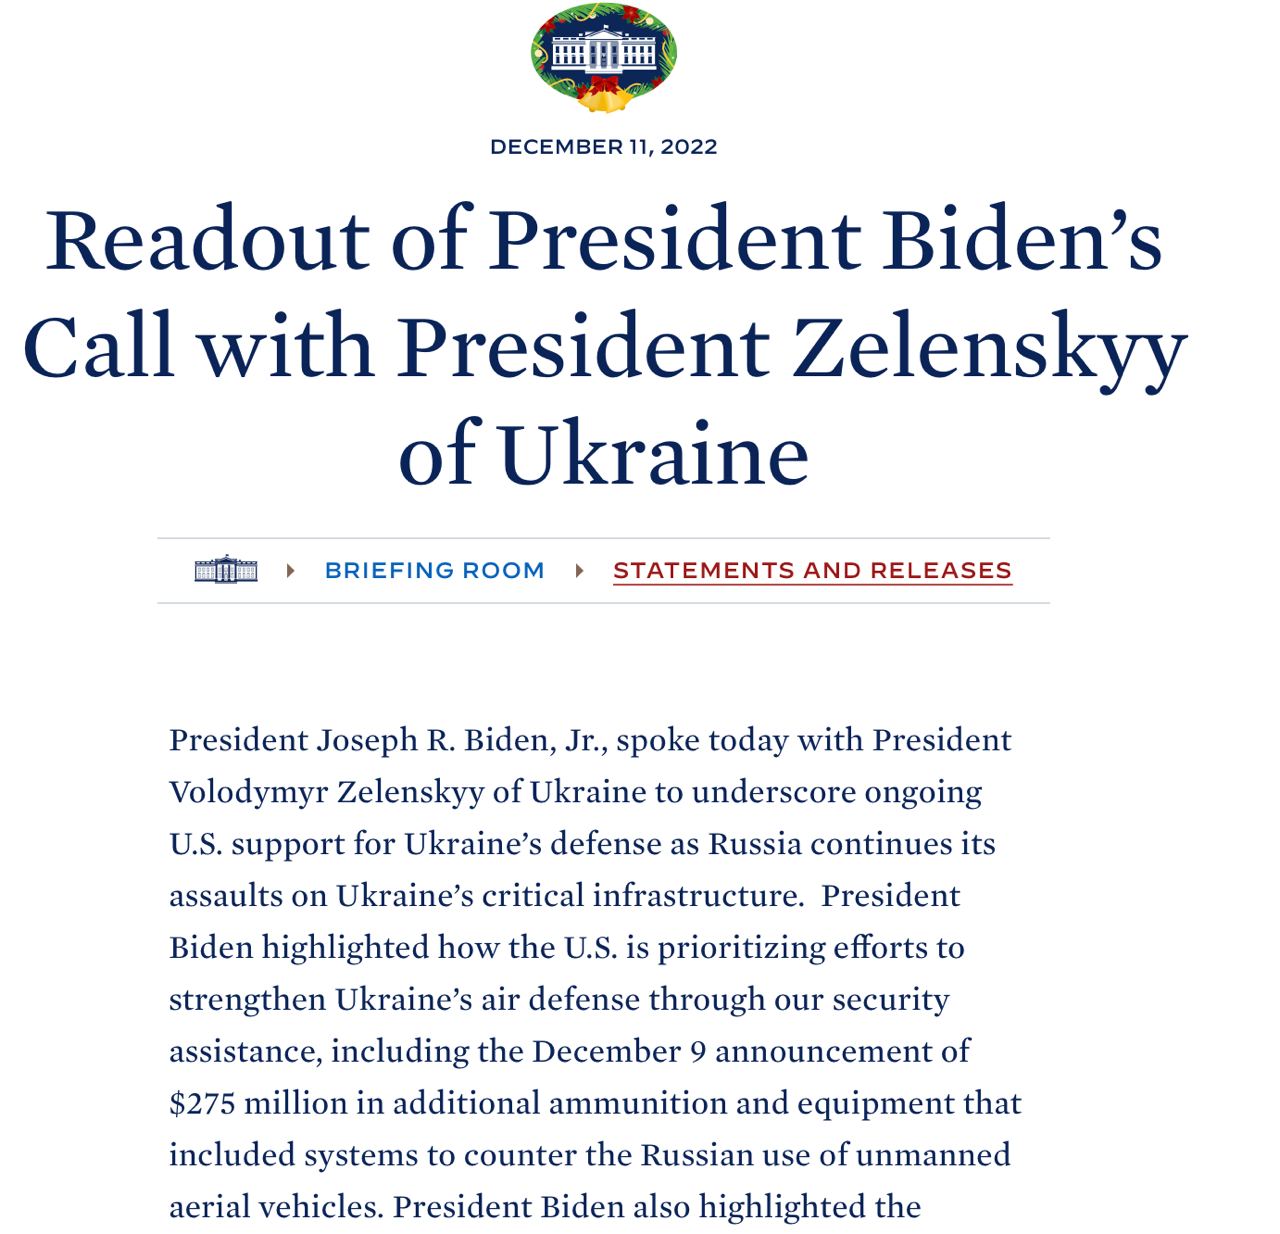 Президент США Джо Байден подтвердил обязательства США продолжать оказывать Украине помощь в области безопасности, экономики и гуманитарной сферы, — сообщает официальный портал Белого дома